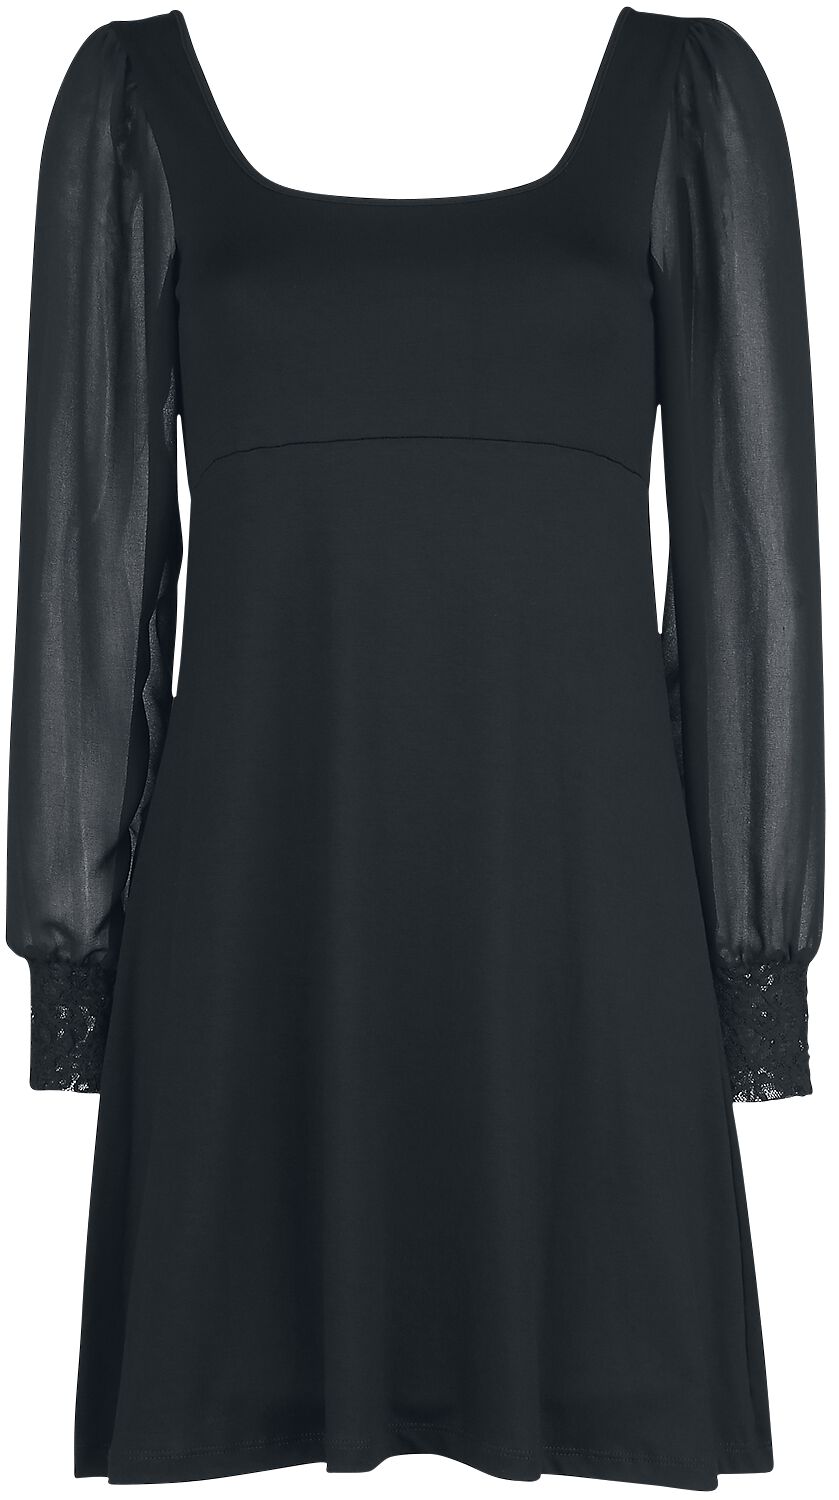 Robe courte Gothic de Outer Vision - Robe Bet - S à M - pour Femme - noir